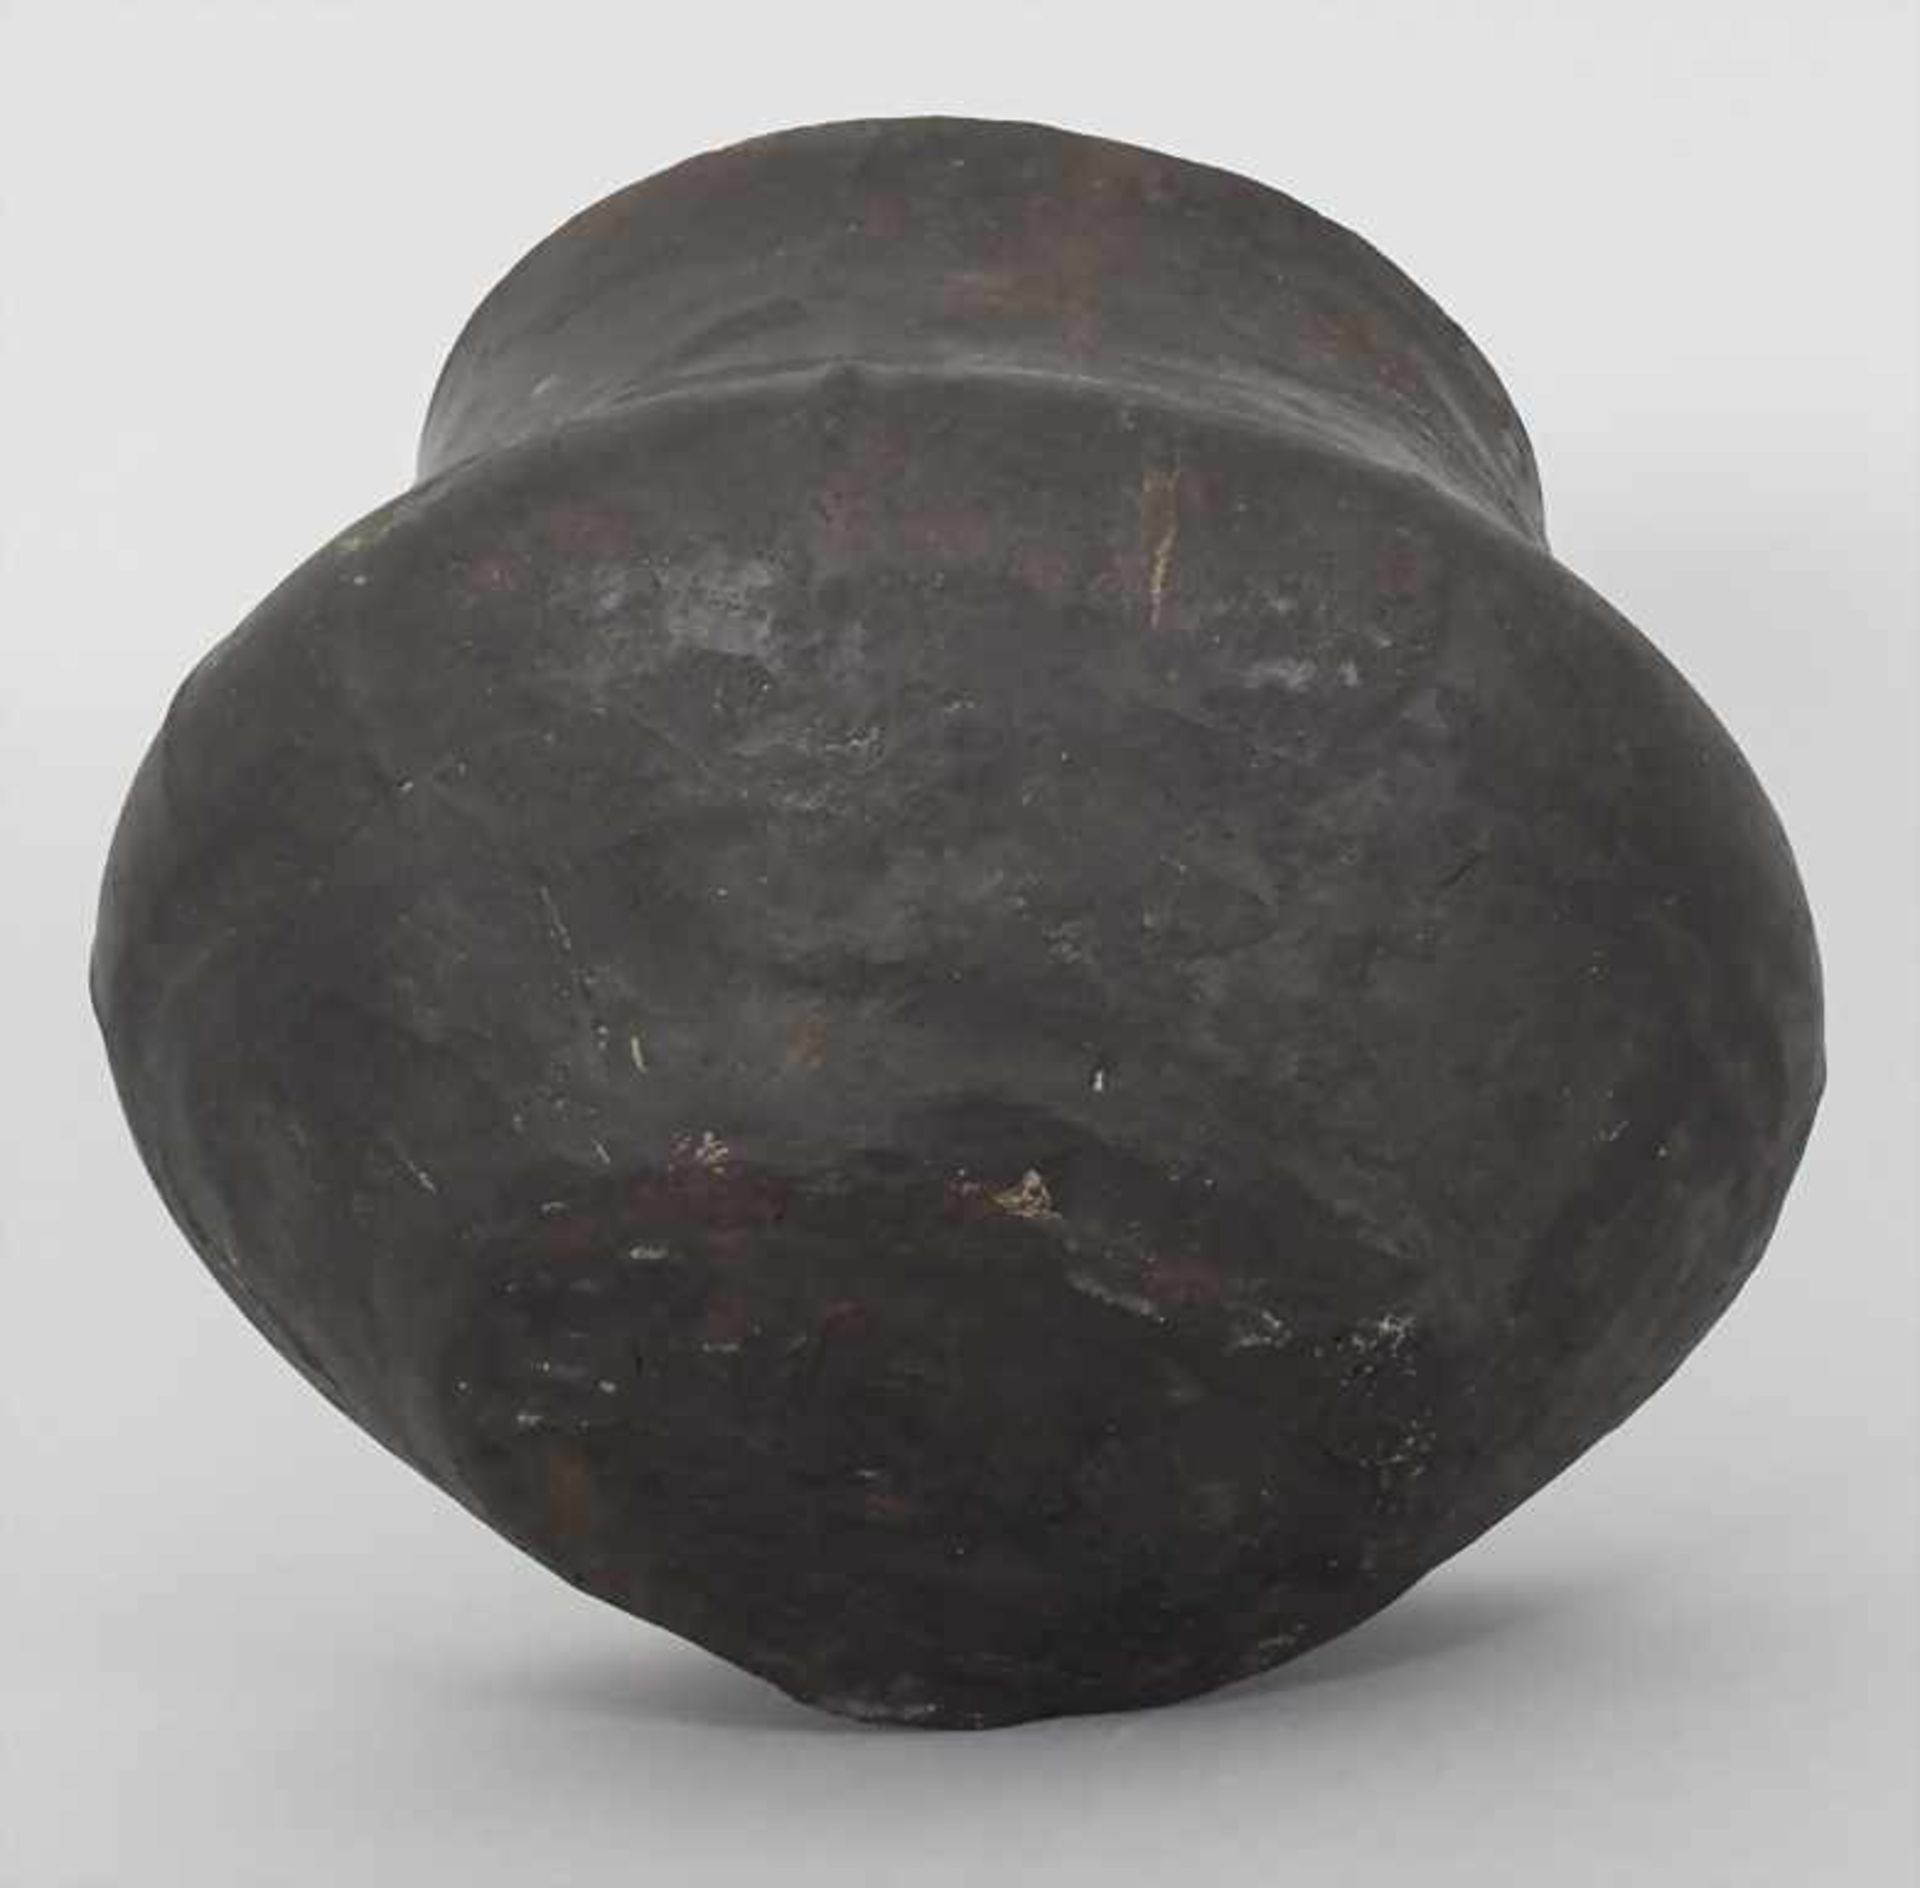 Bronzezeitliches Keramik-Gefäß / A Bronze Age ceramic vessel, Lausitzer Kultur, 9. - 6. Jh. v. Chr. - Image 6 of 6